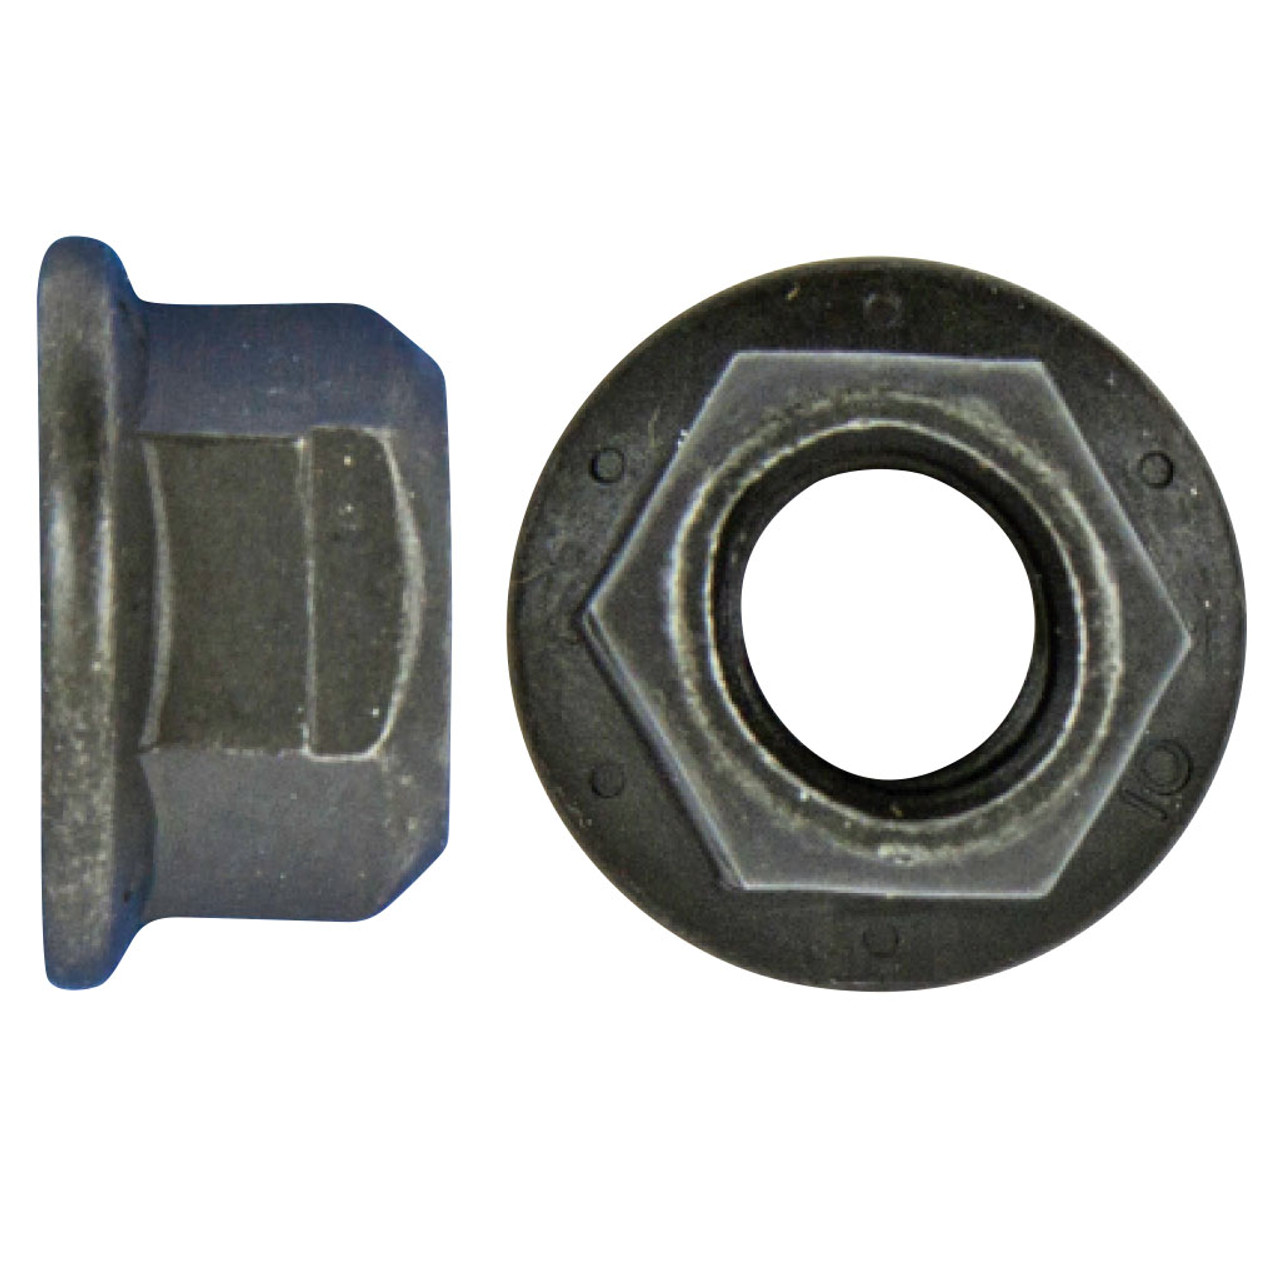 M10 x 1.50- 15mm Spin Nut - Hi-Line Inc.